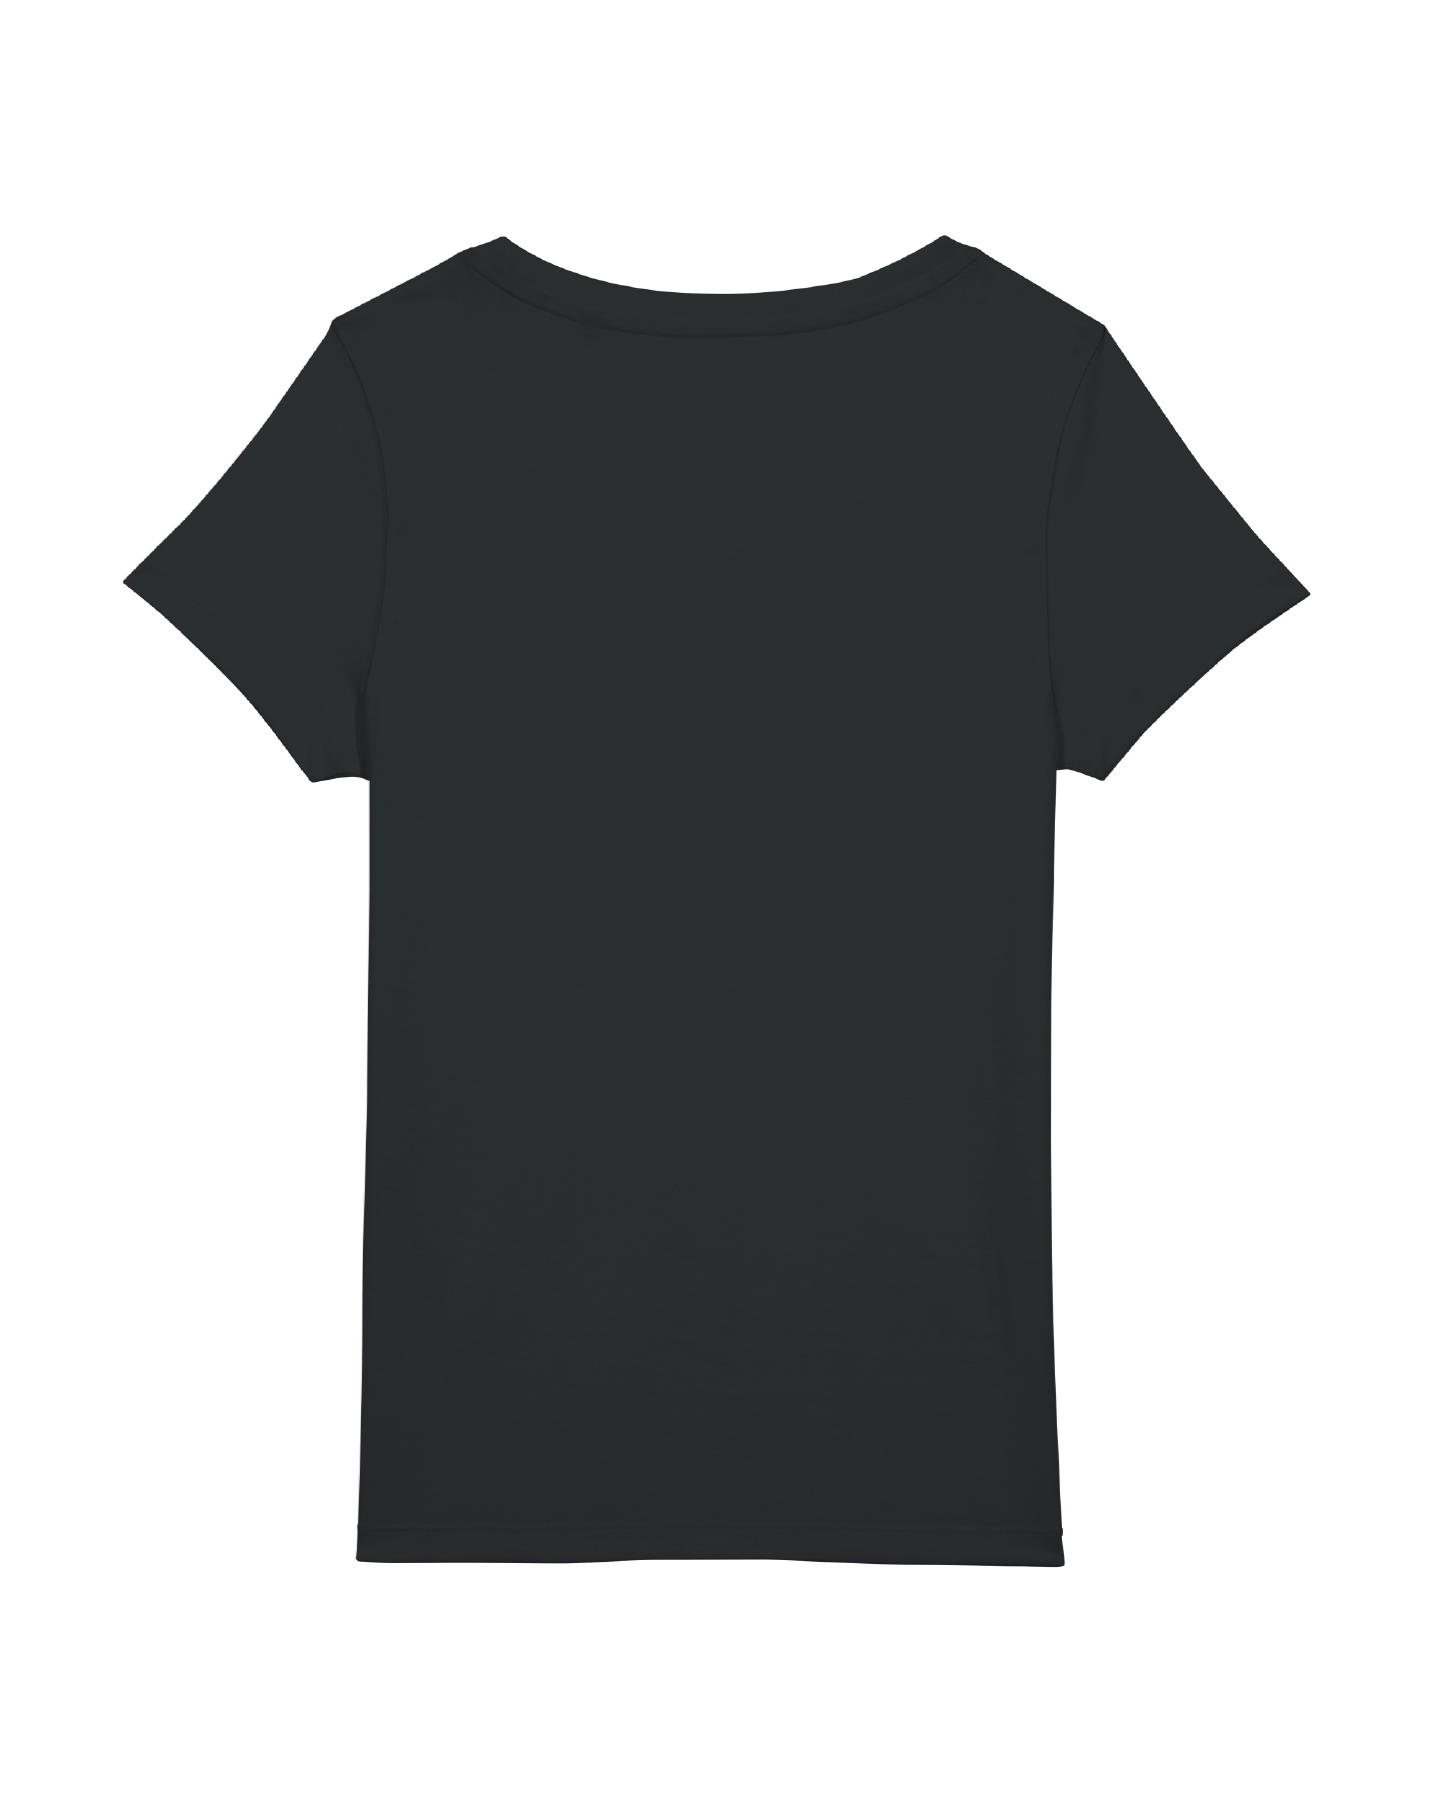 T-Shirt Damen LAUSITZ schwarz